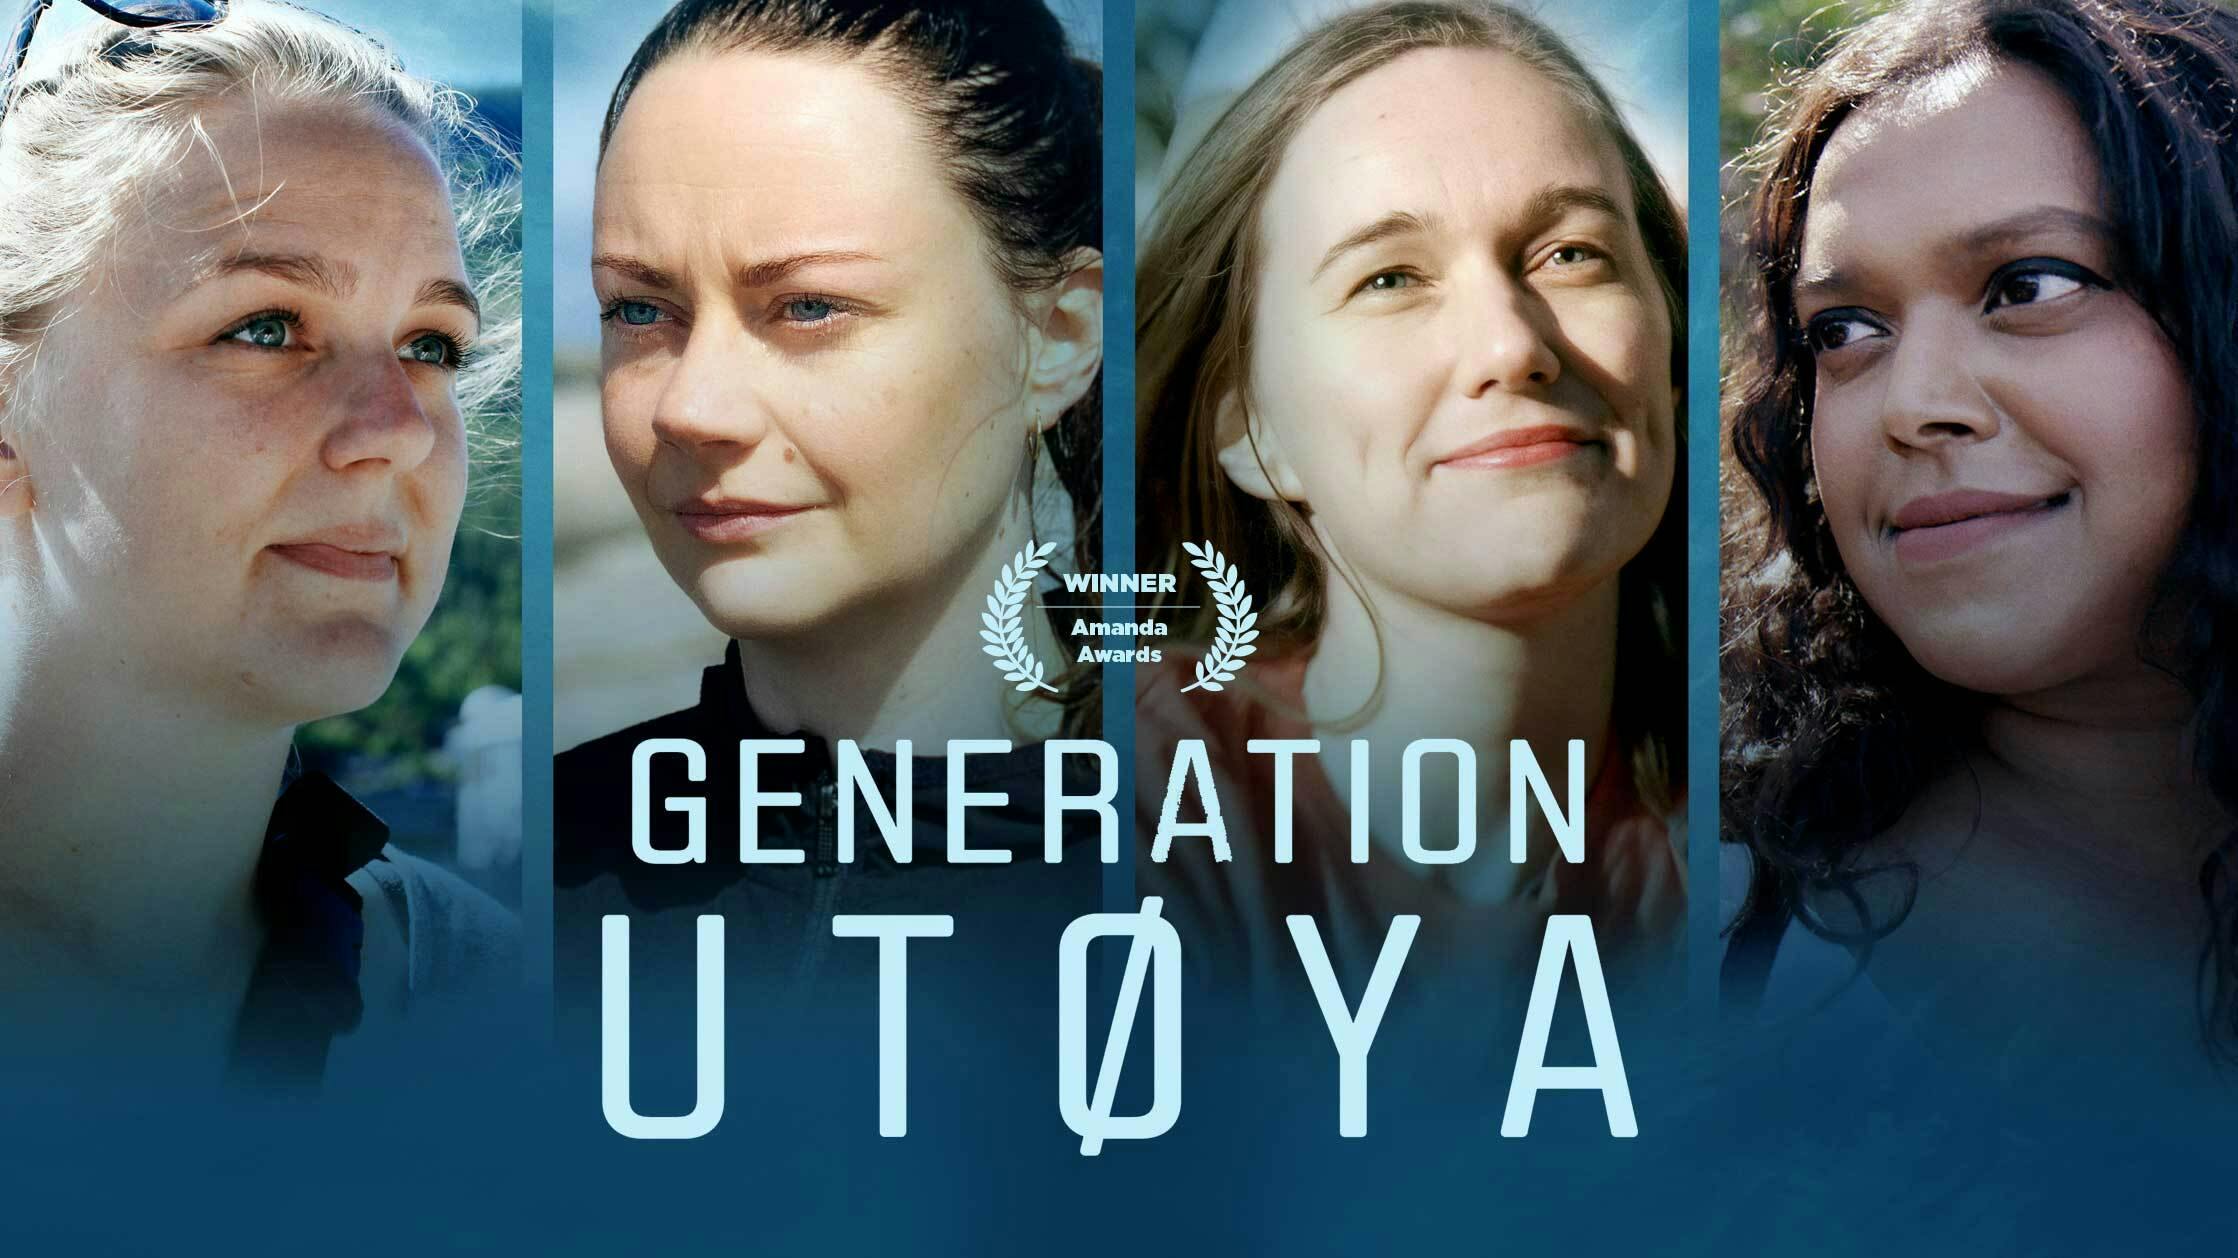 Generation Utoya